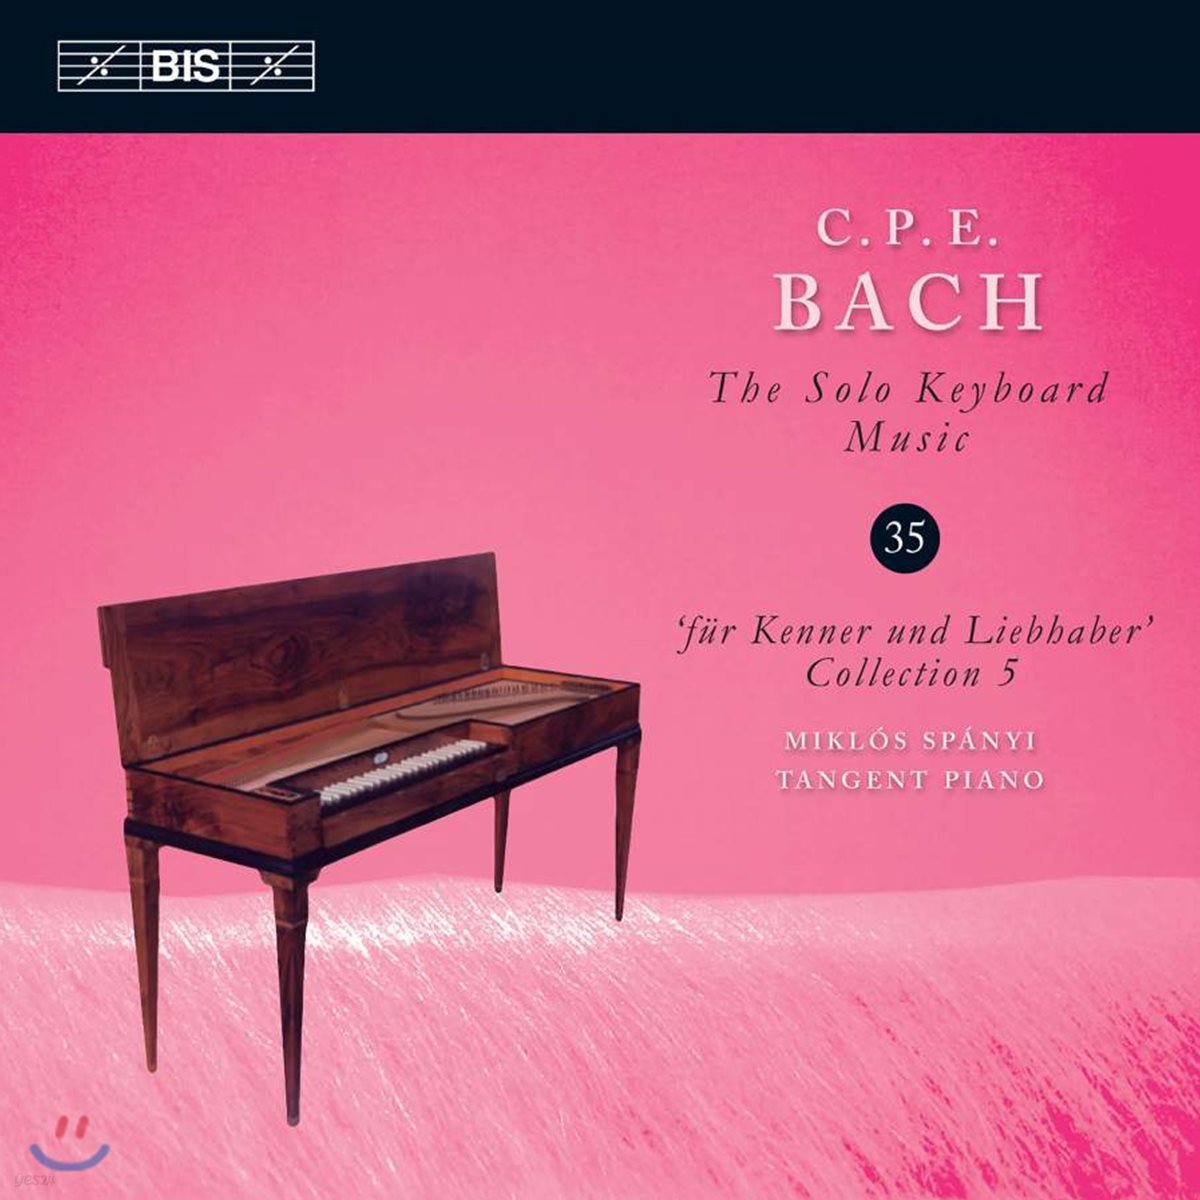 Miklos Spanyi 칼 필립 에마누엘 바흐: 솔로 키보드 음악 35집 (C.P.E. Bach: Solo Keyboard Music Vol.35)